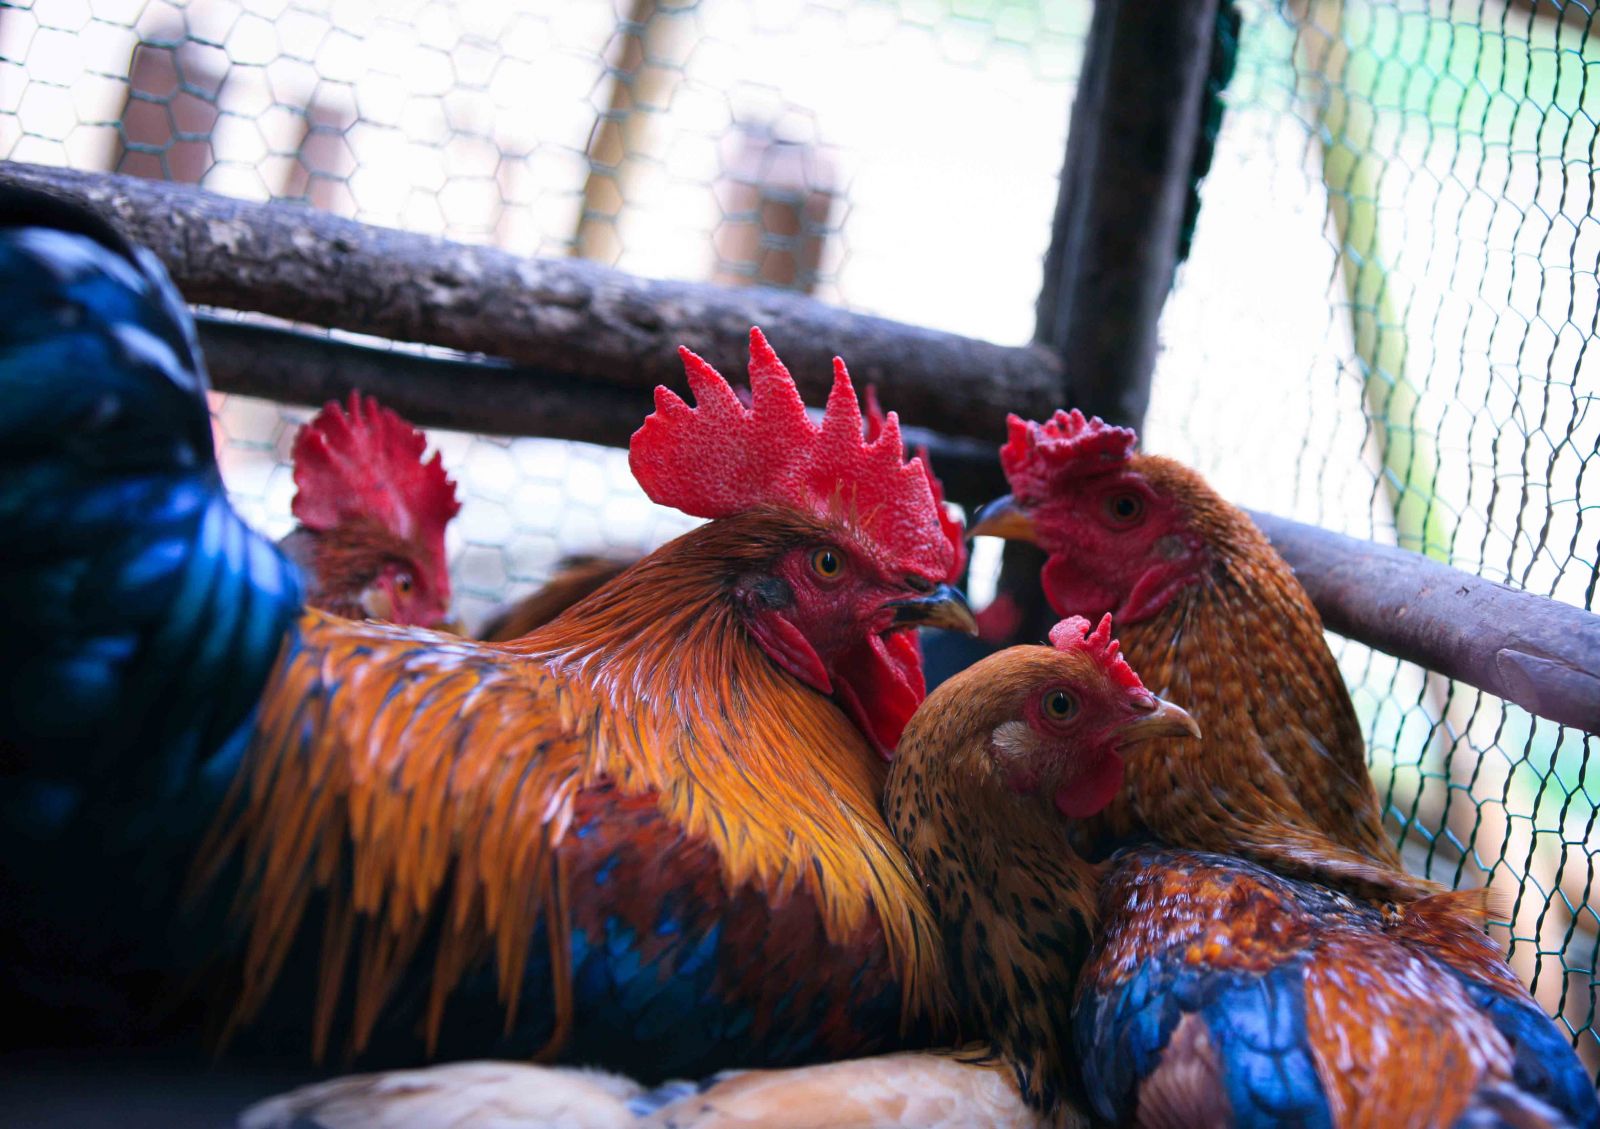 Trong những tuần đầu tiên của tháng 1 năm 2019, gà sáu cựa có giá khoảng 250-300 ngàn đồng/kg, gà tám cựa giá cao hơn một chút tùy chủ nuôi.